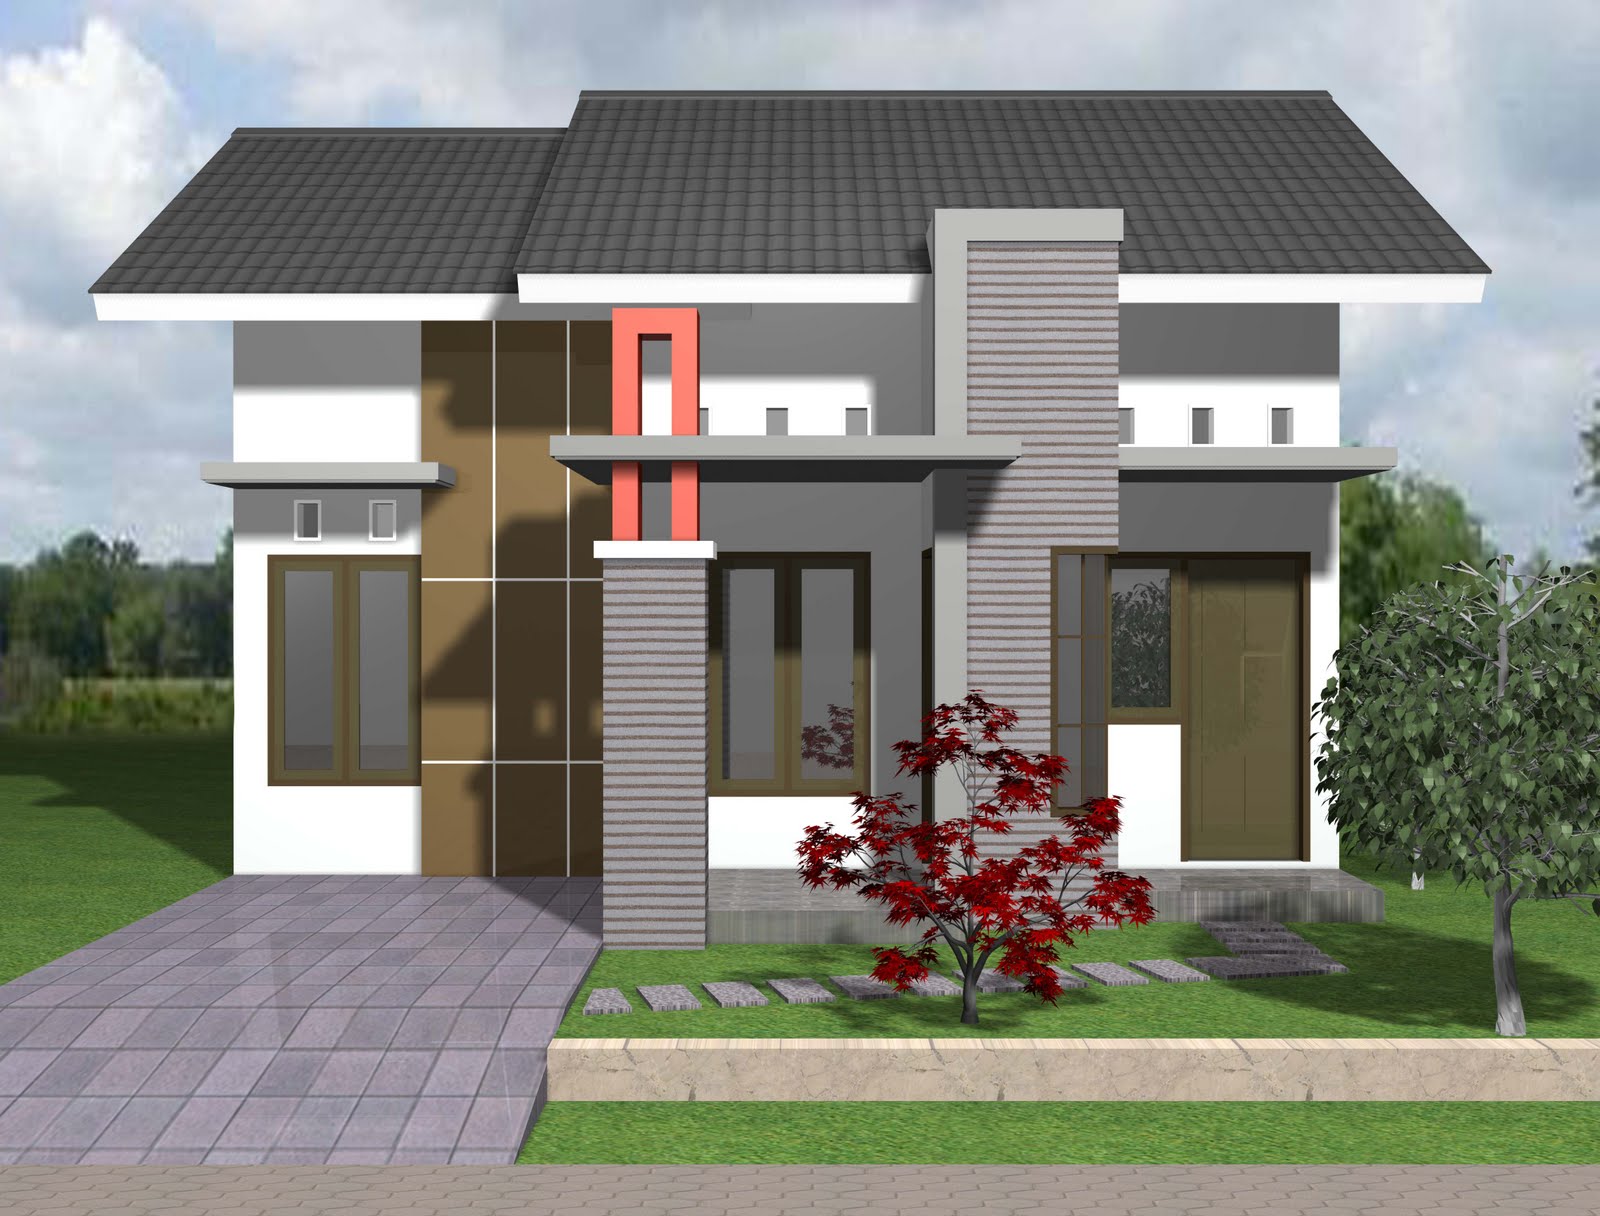 Desain Rumah Sederhana 1 Lantai Model Rumah Minimalis Desain Terbaru